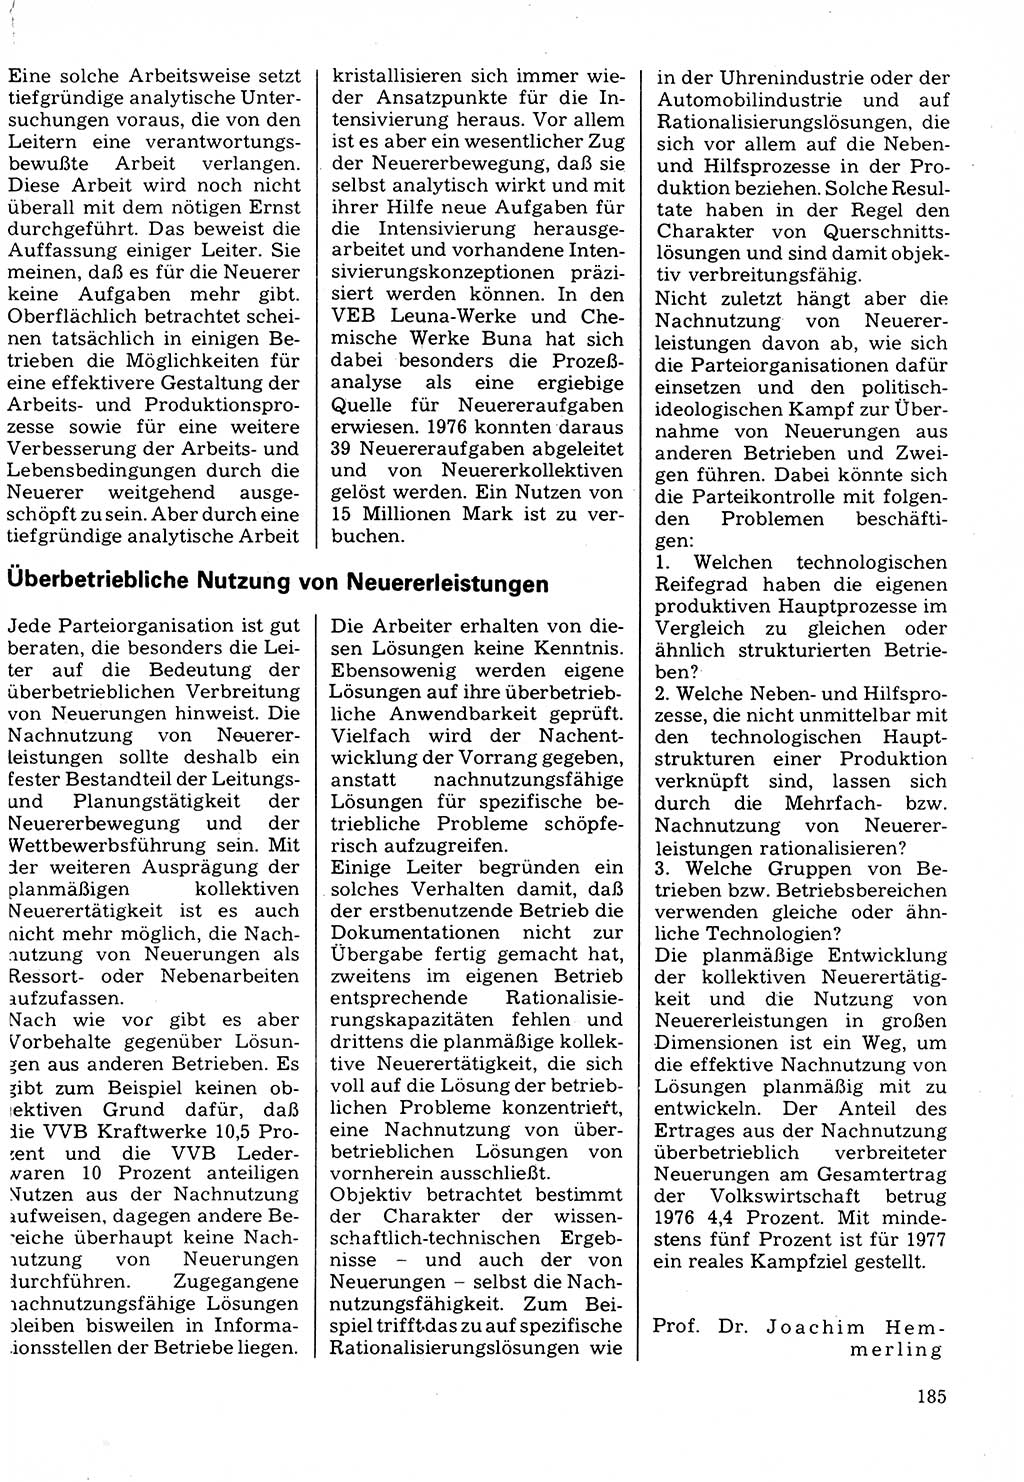 Neuer Weg (NW), Organ des Zentralkomitees (ZK) der SED (Sozialistische Einheitspartei Deutschlands) für Fragen des Parteilebens, 32. Jahrgang [Deutsche Demokratische Republik (DDR)] 1977, Seite 185 (NW ZK SED DDR 1977, S. 185)